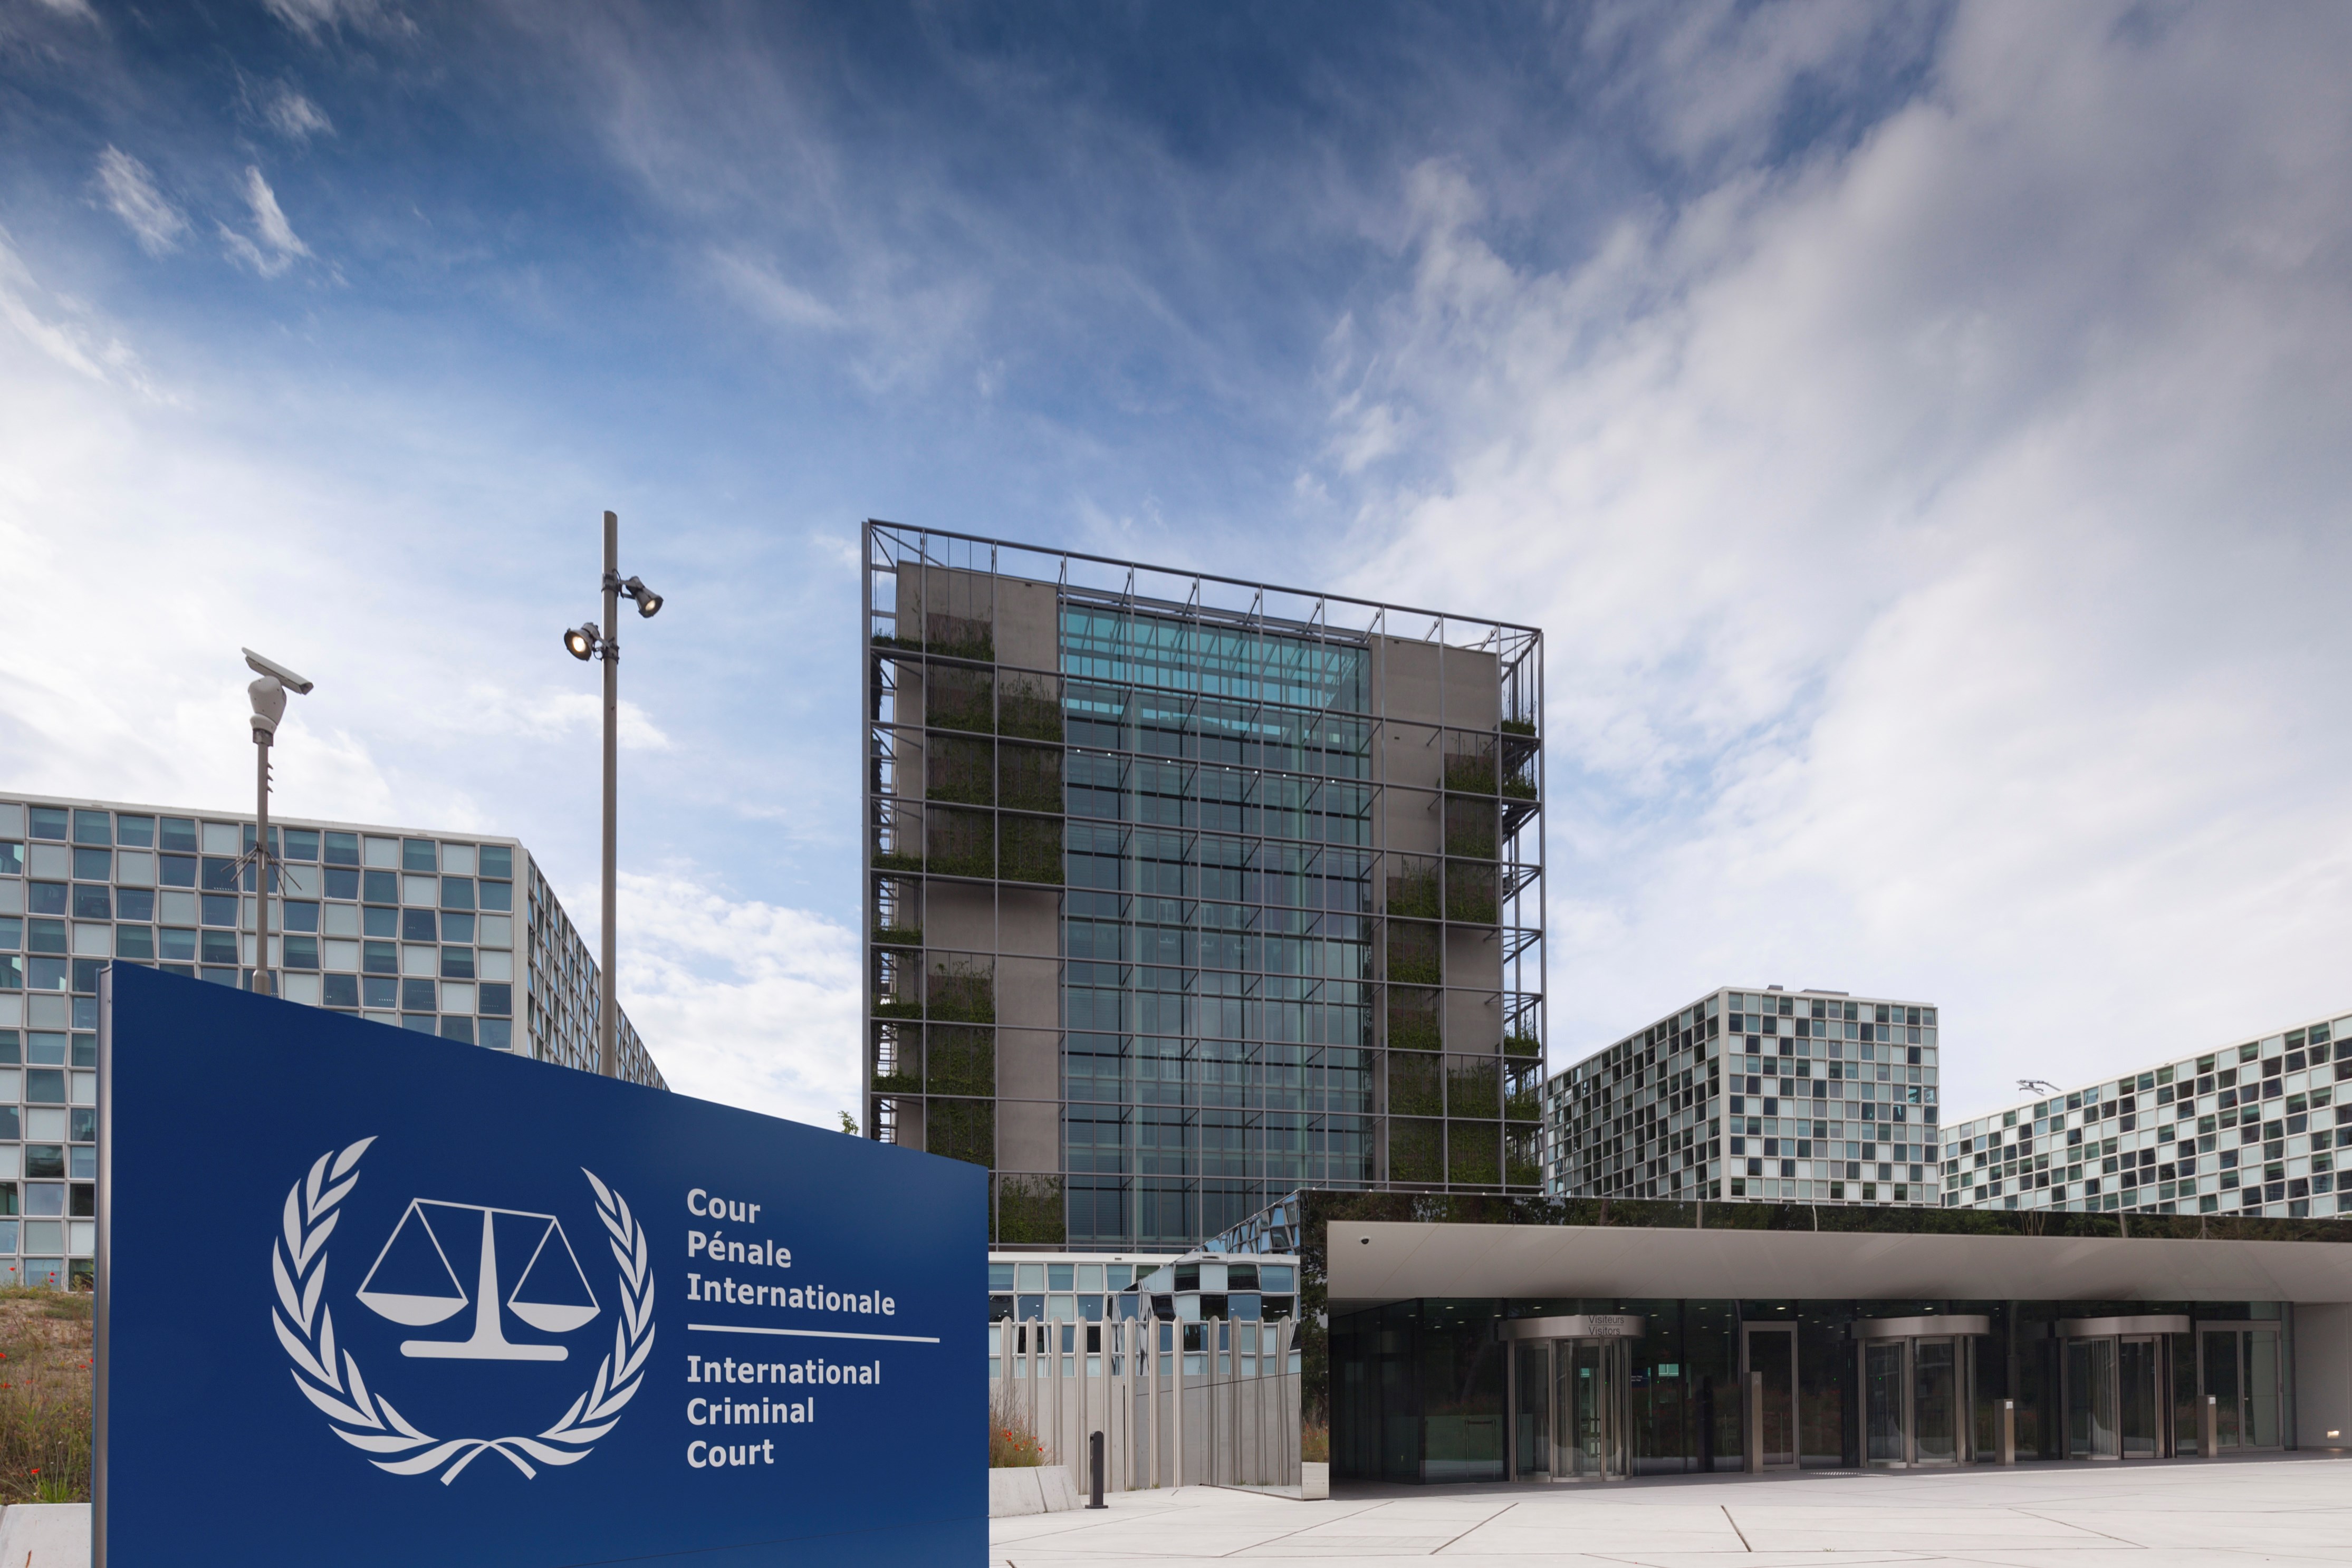 בית הדין הפלילי הבינלאומי בהאג – כיצד הגענו לשם?